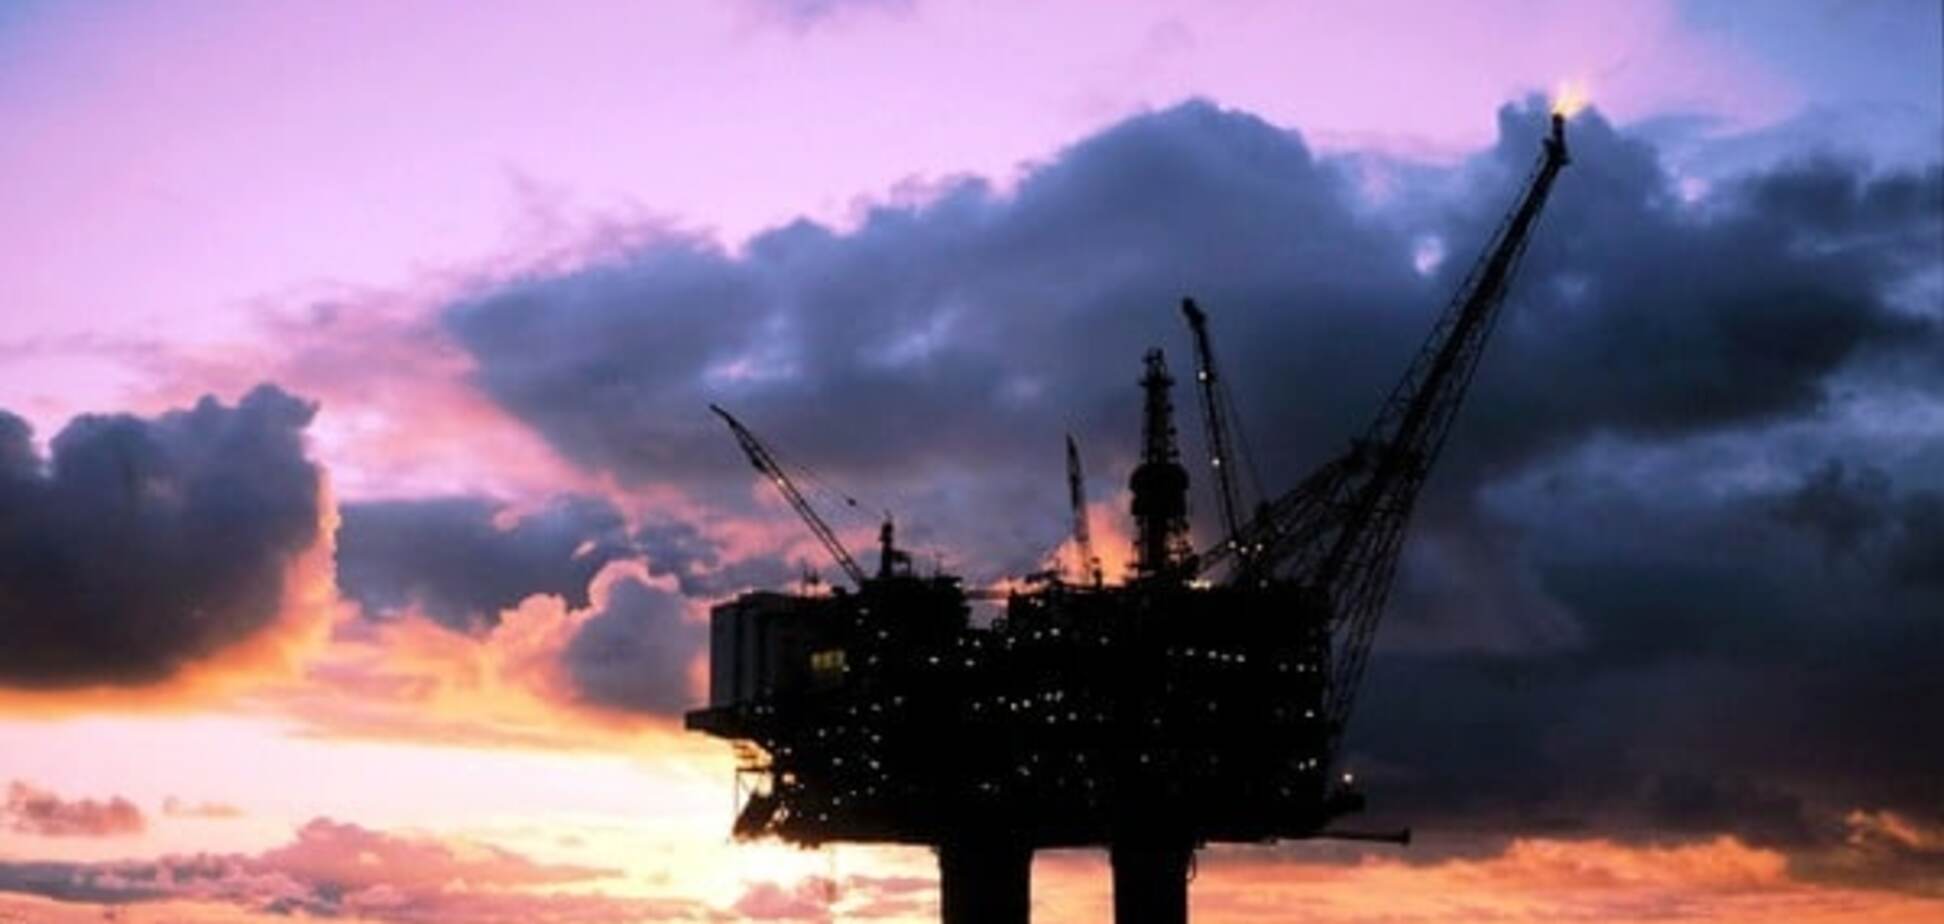 Временное затишье: переизбыток рынка продолжил давление на нефтяные цены 